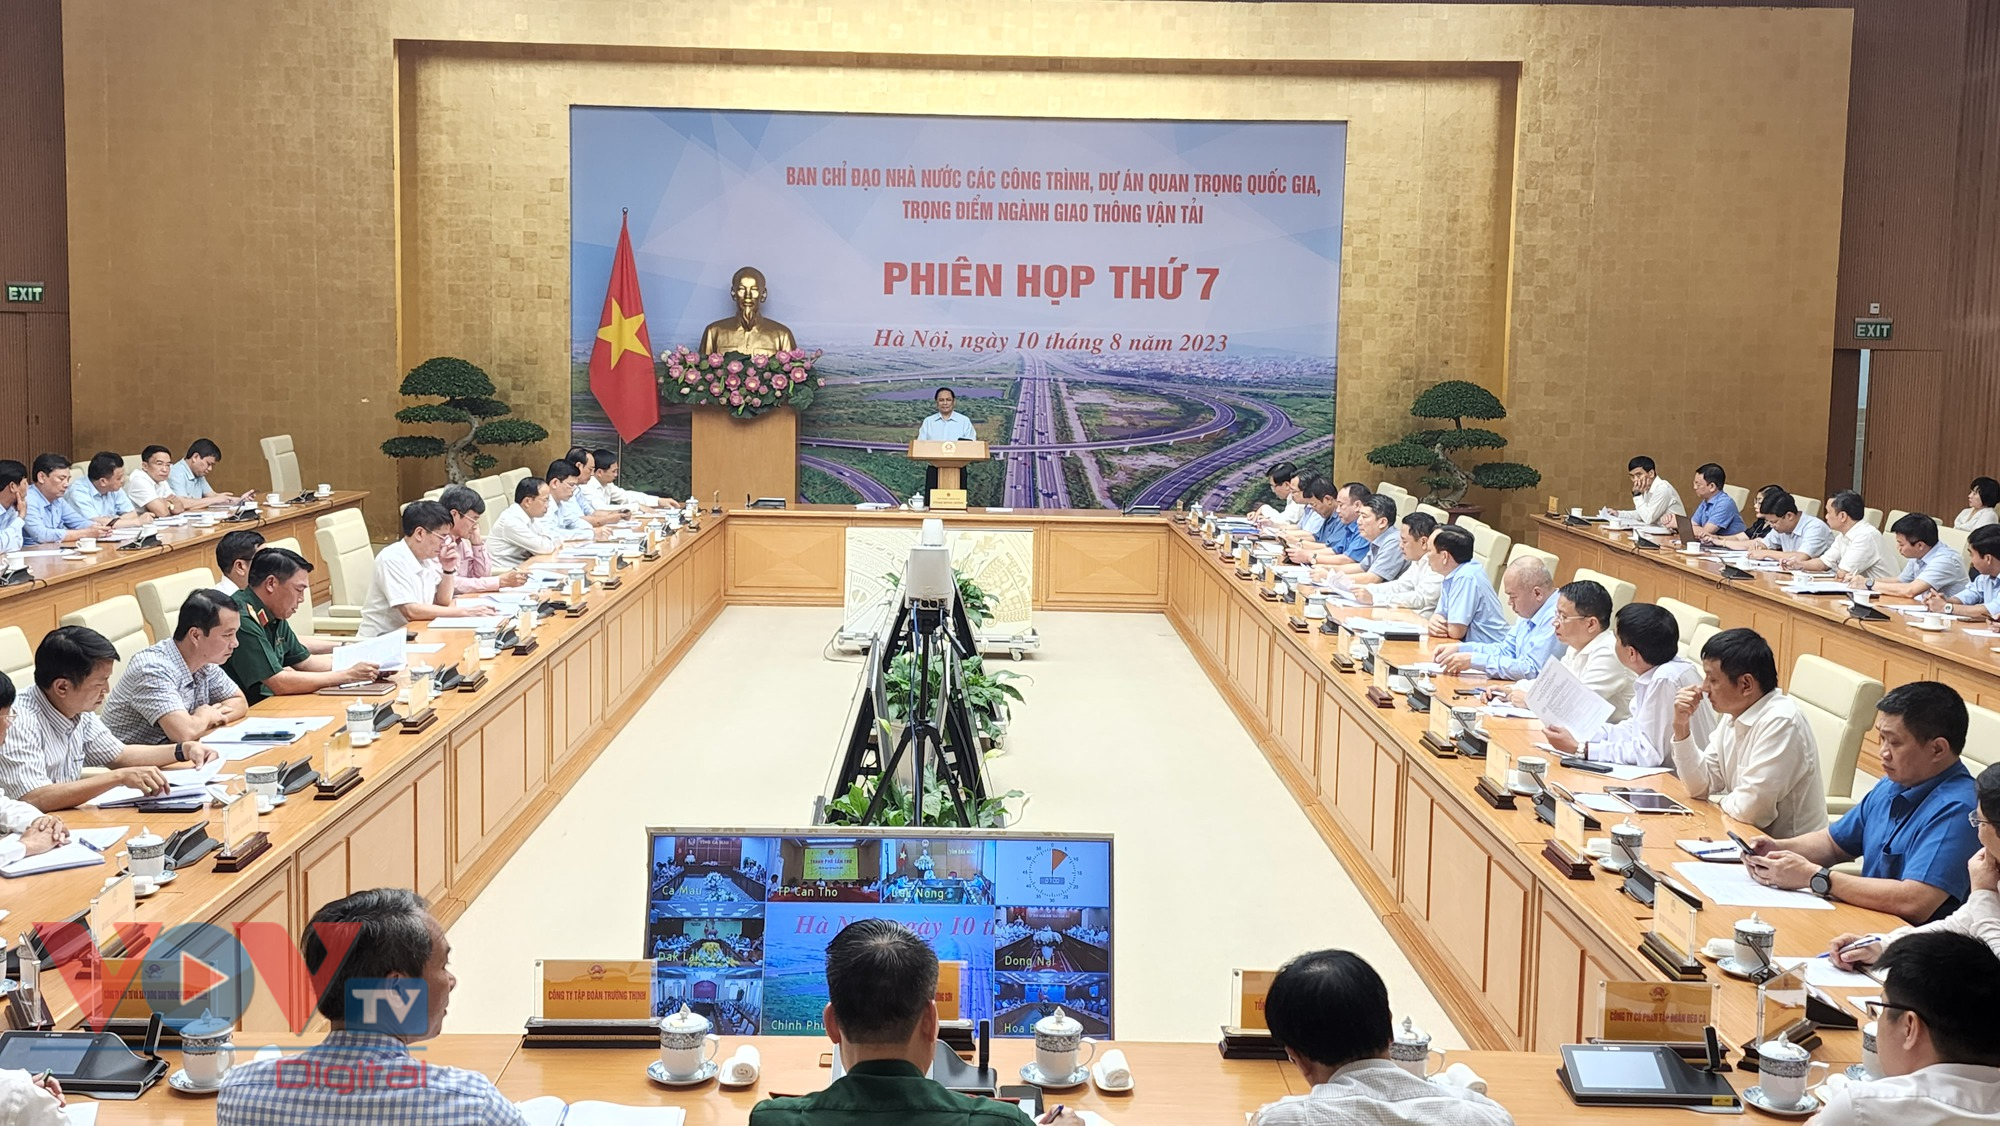 Thủ tướng Phạm Minh Chính chủ trì phiên họp lần thứ 7 Ban Chỉ đạo Nhà nước các công trình, dự án quan trọng quốc gia, trọng điểm ngành GTVT - Ảnh 1.